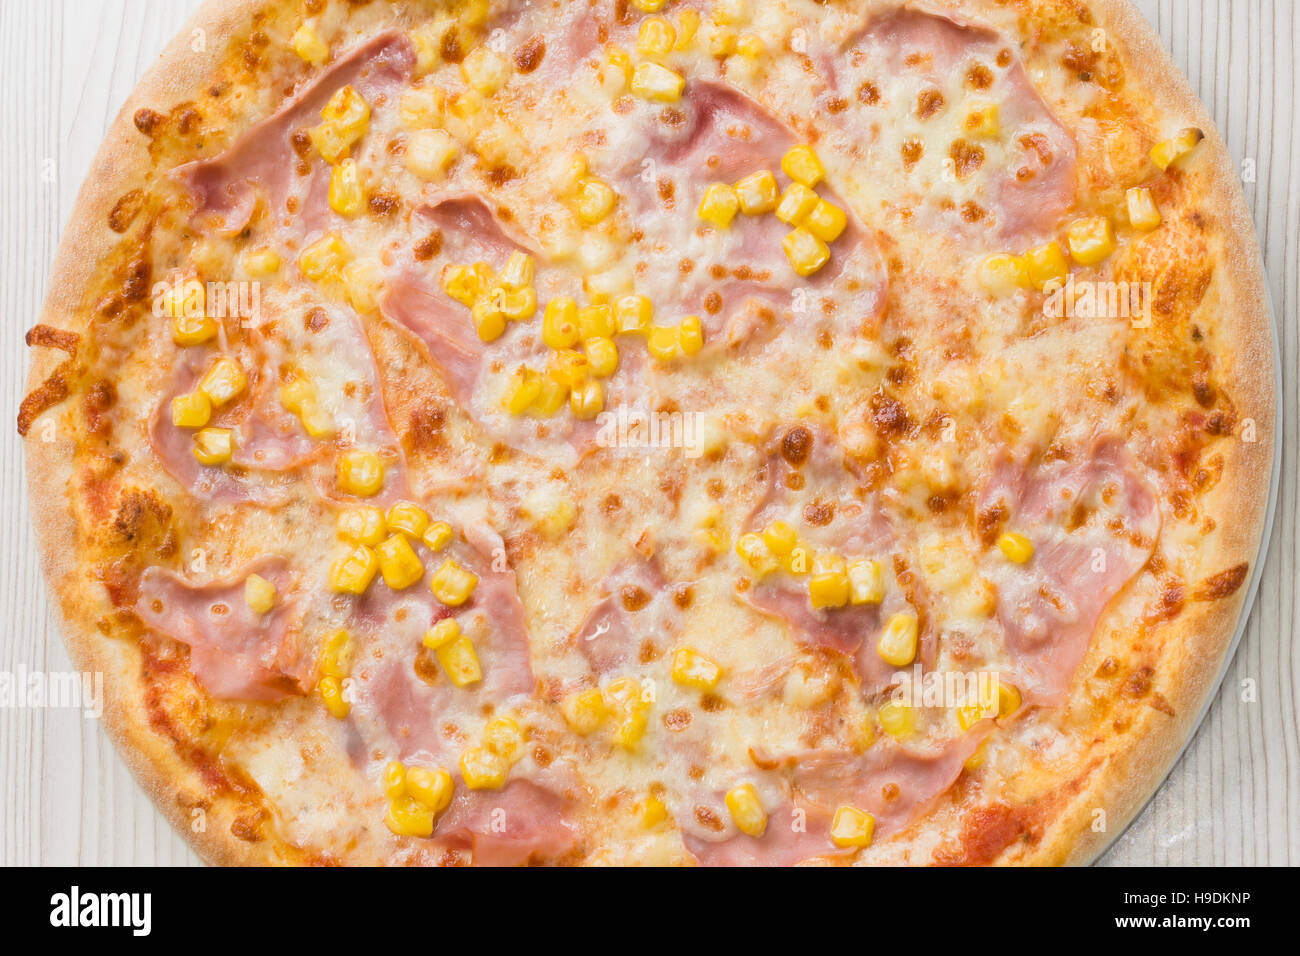 Pizza mit Schinken und Mais auf dem Tisch Stockfotografie - Alamy